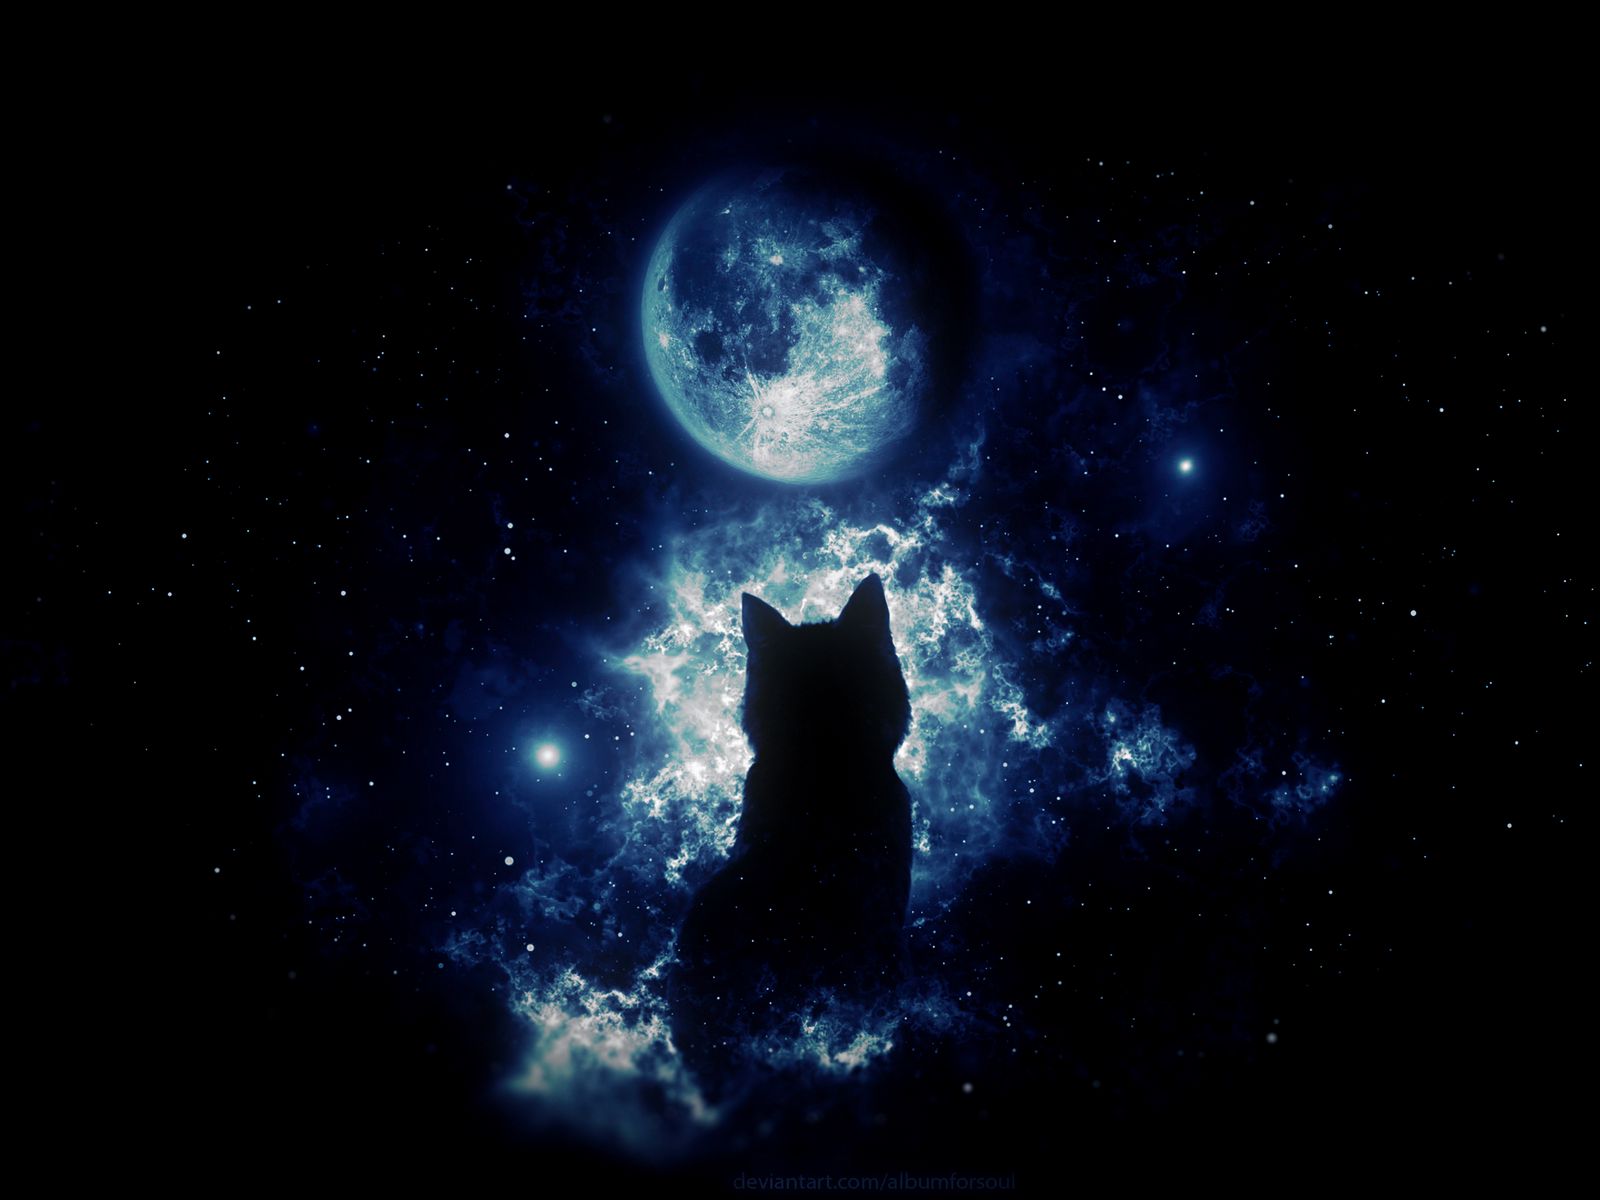 Кошки на фоне Луны